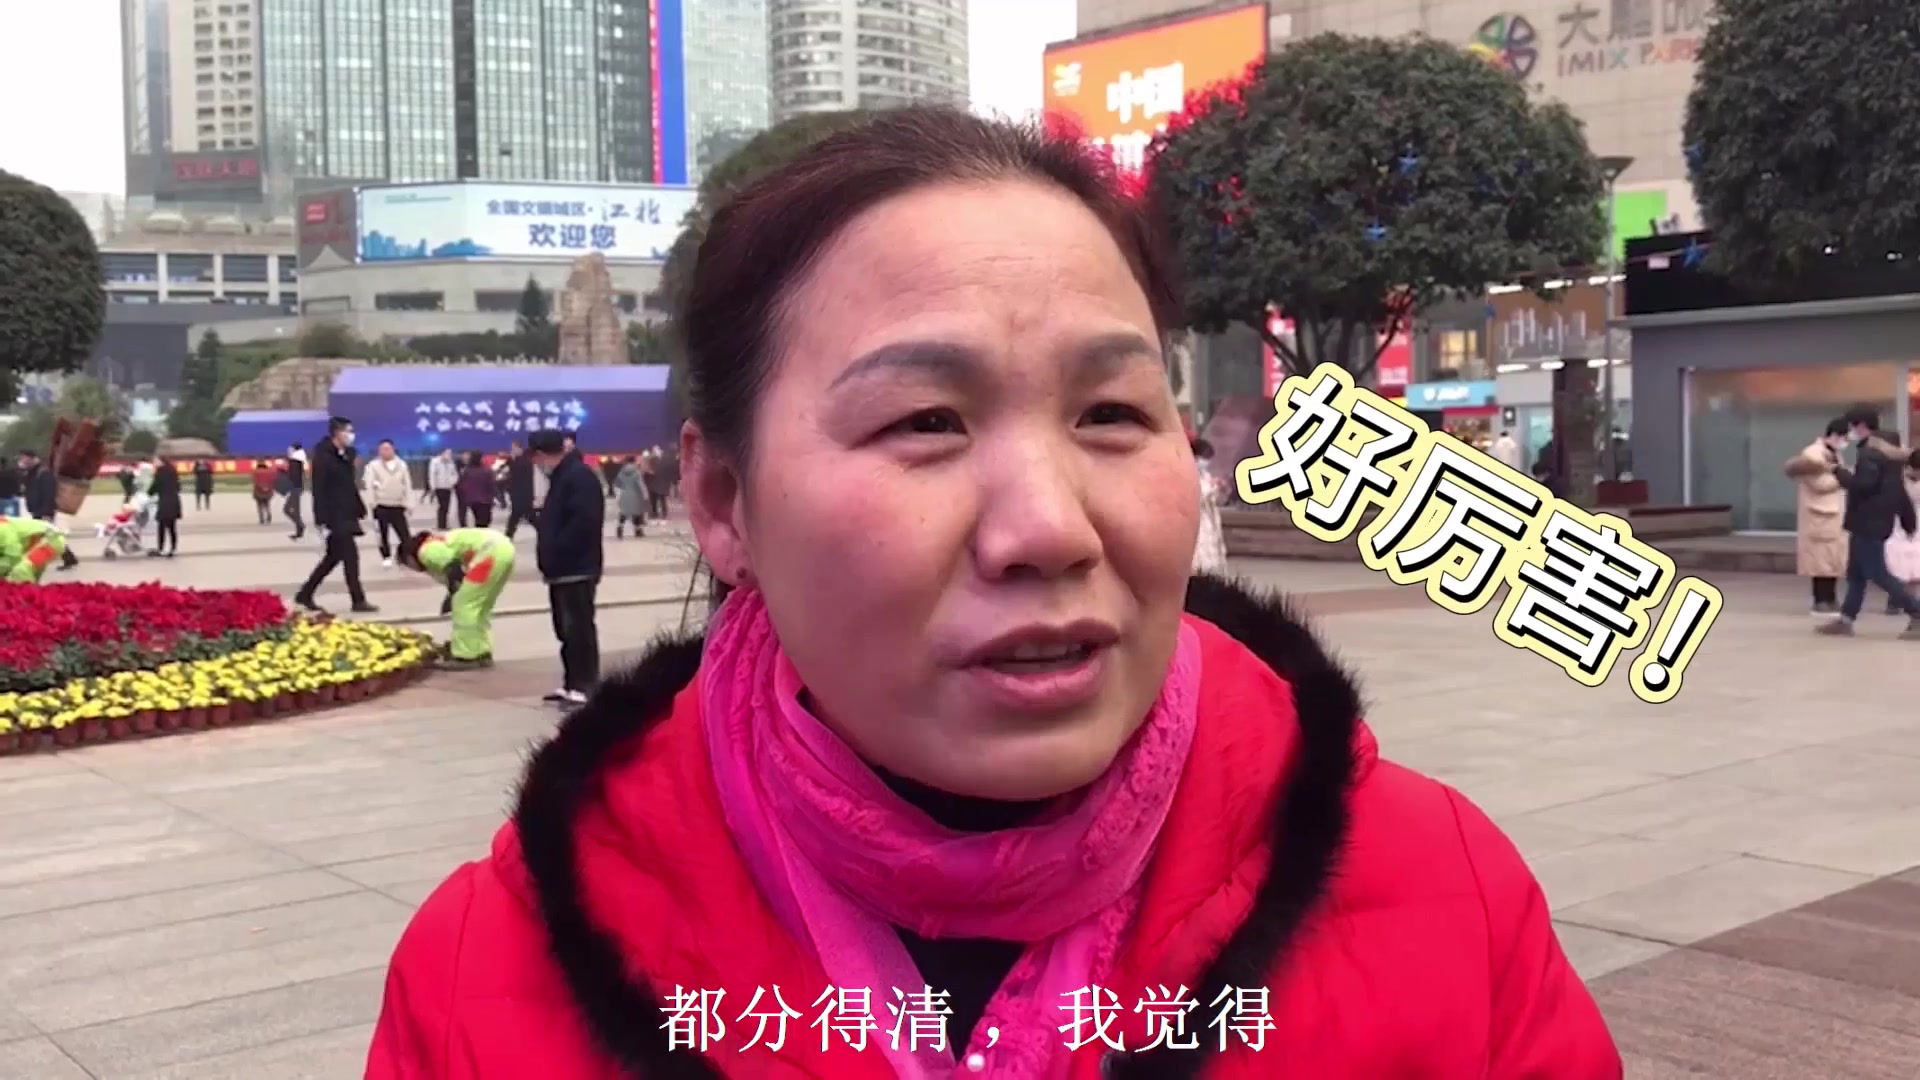 重庆市垃圾分类公众号上线新年街采视频 快来一起答题